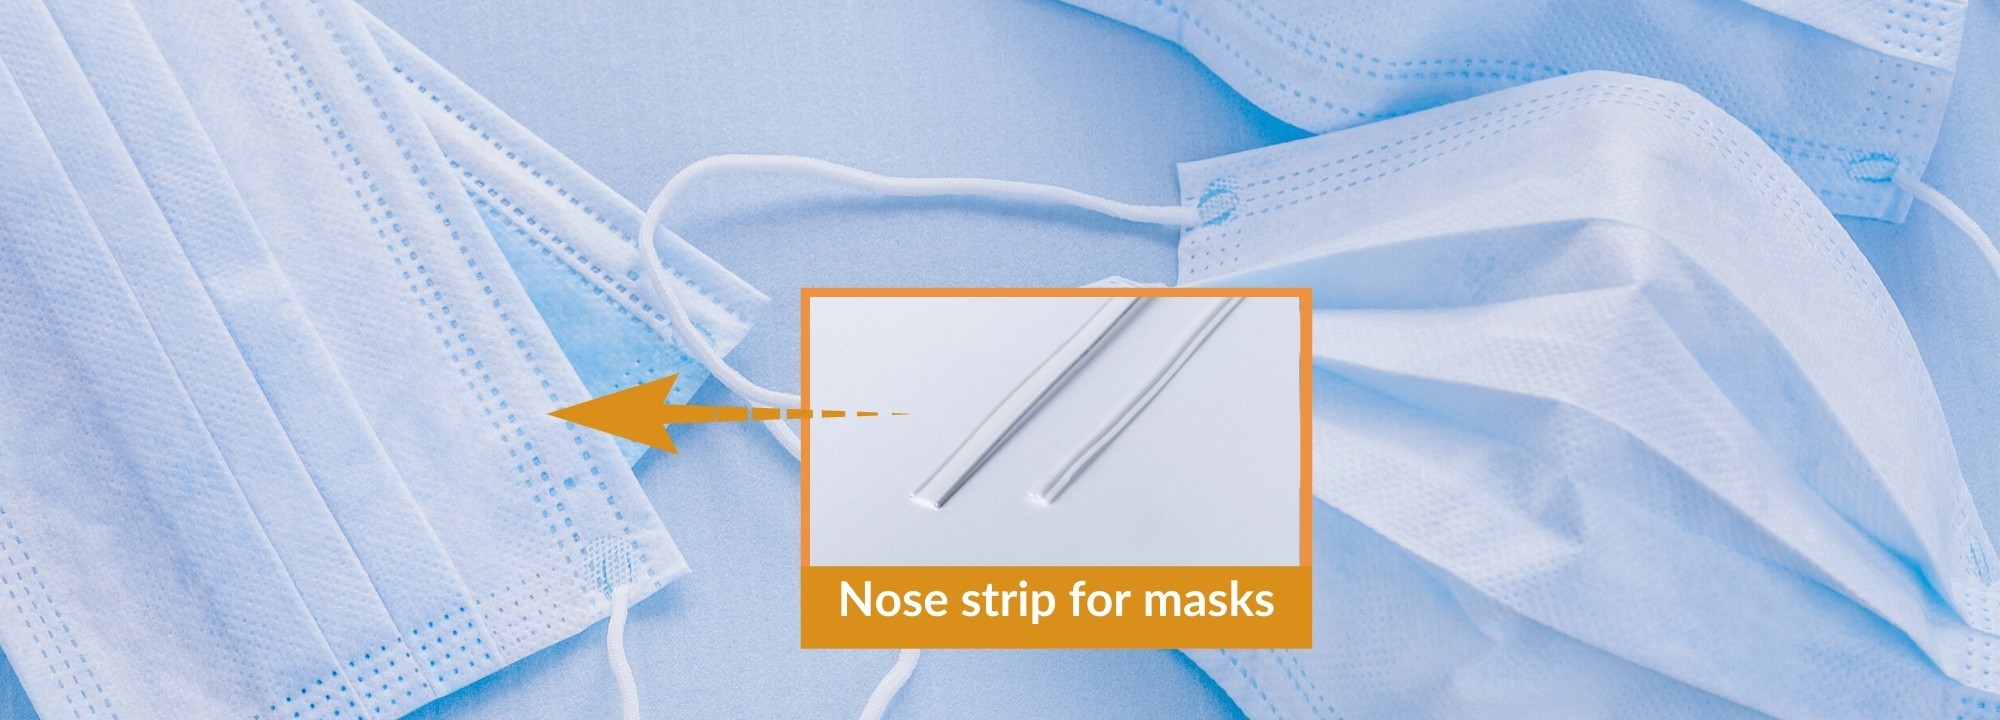 Capifil - Slider home_Nose strip for masks